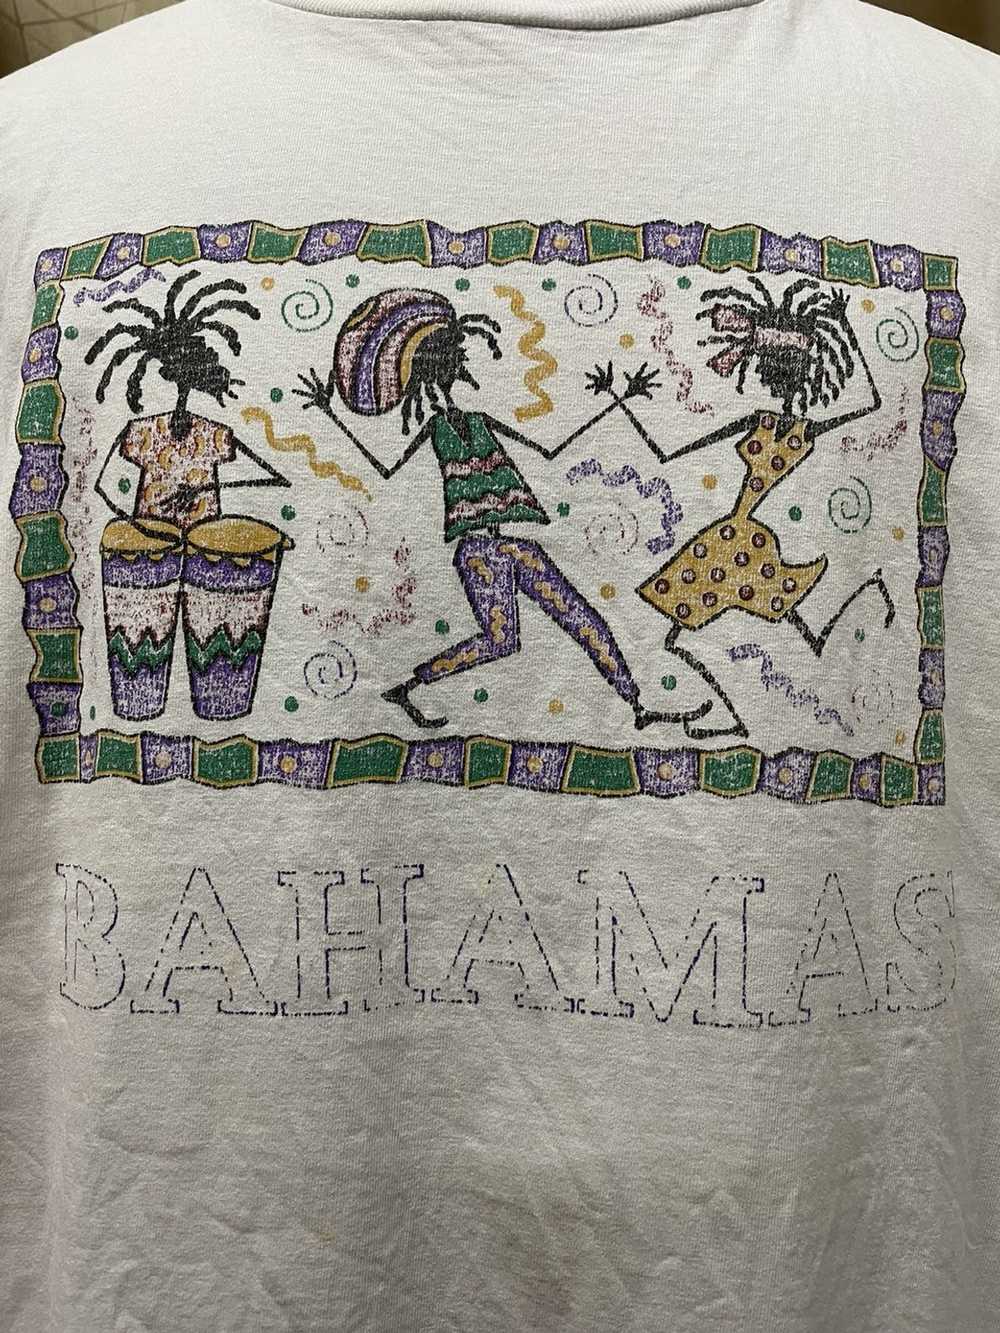 Made In Usa × Rare × Vintage Bahamas T shirt - image 3